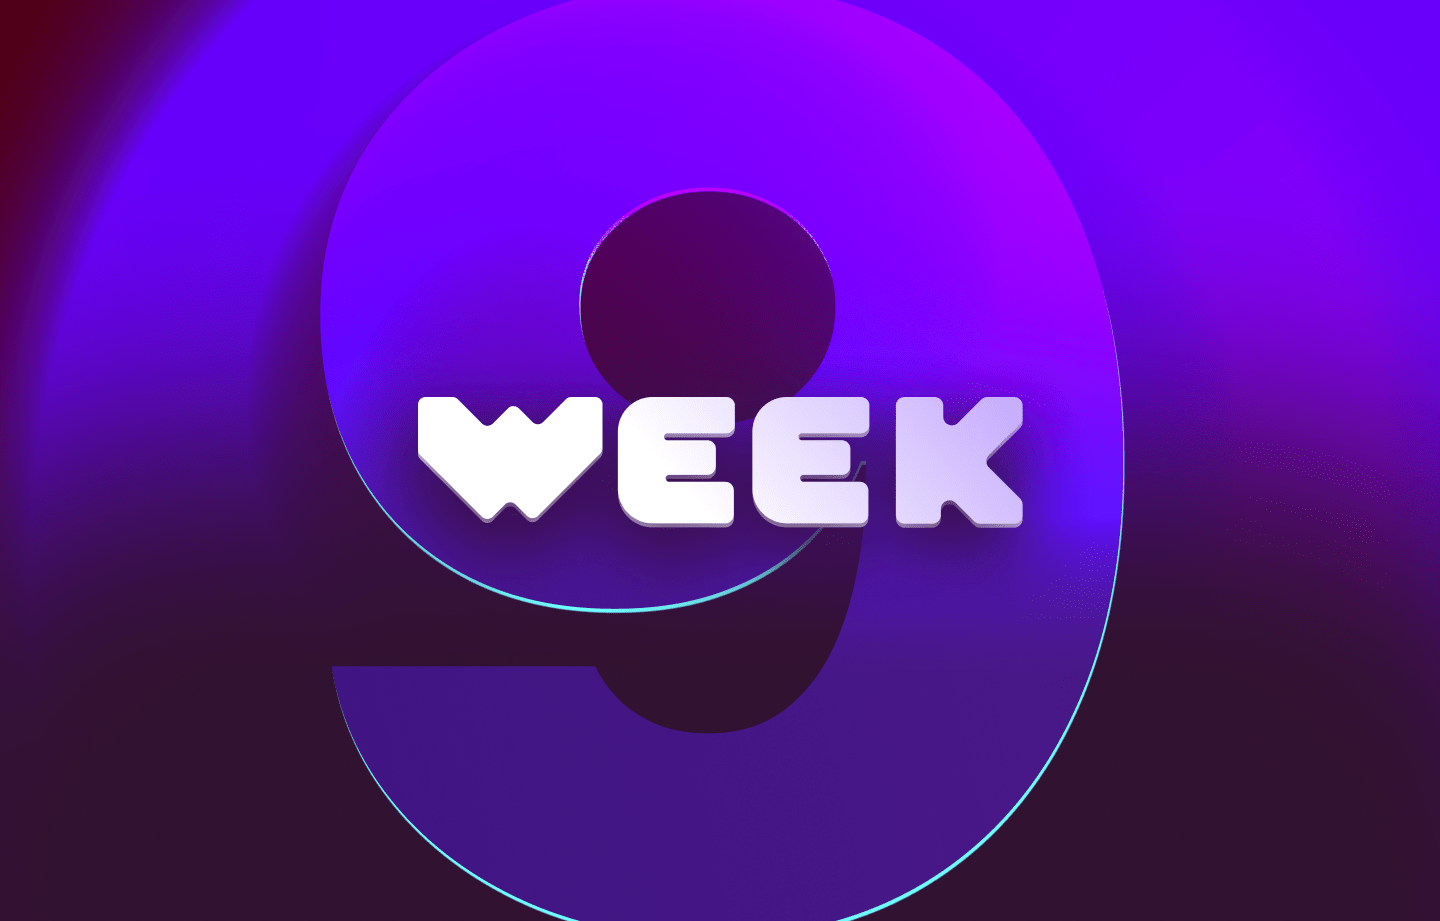 This week in web3 #9